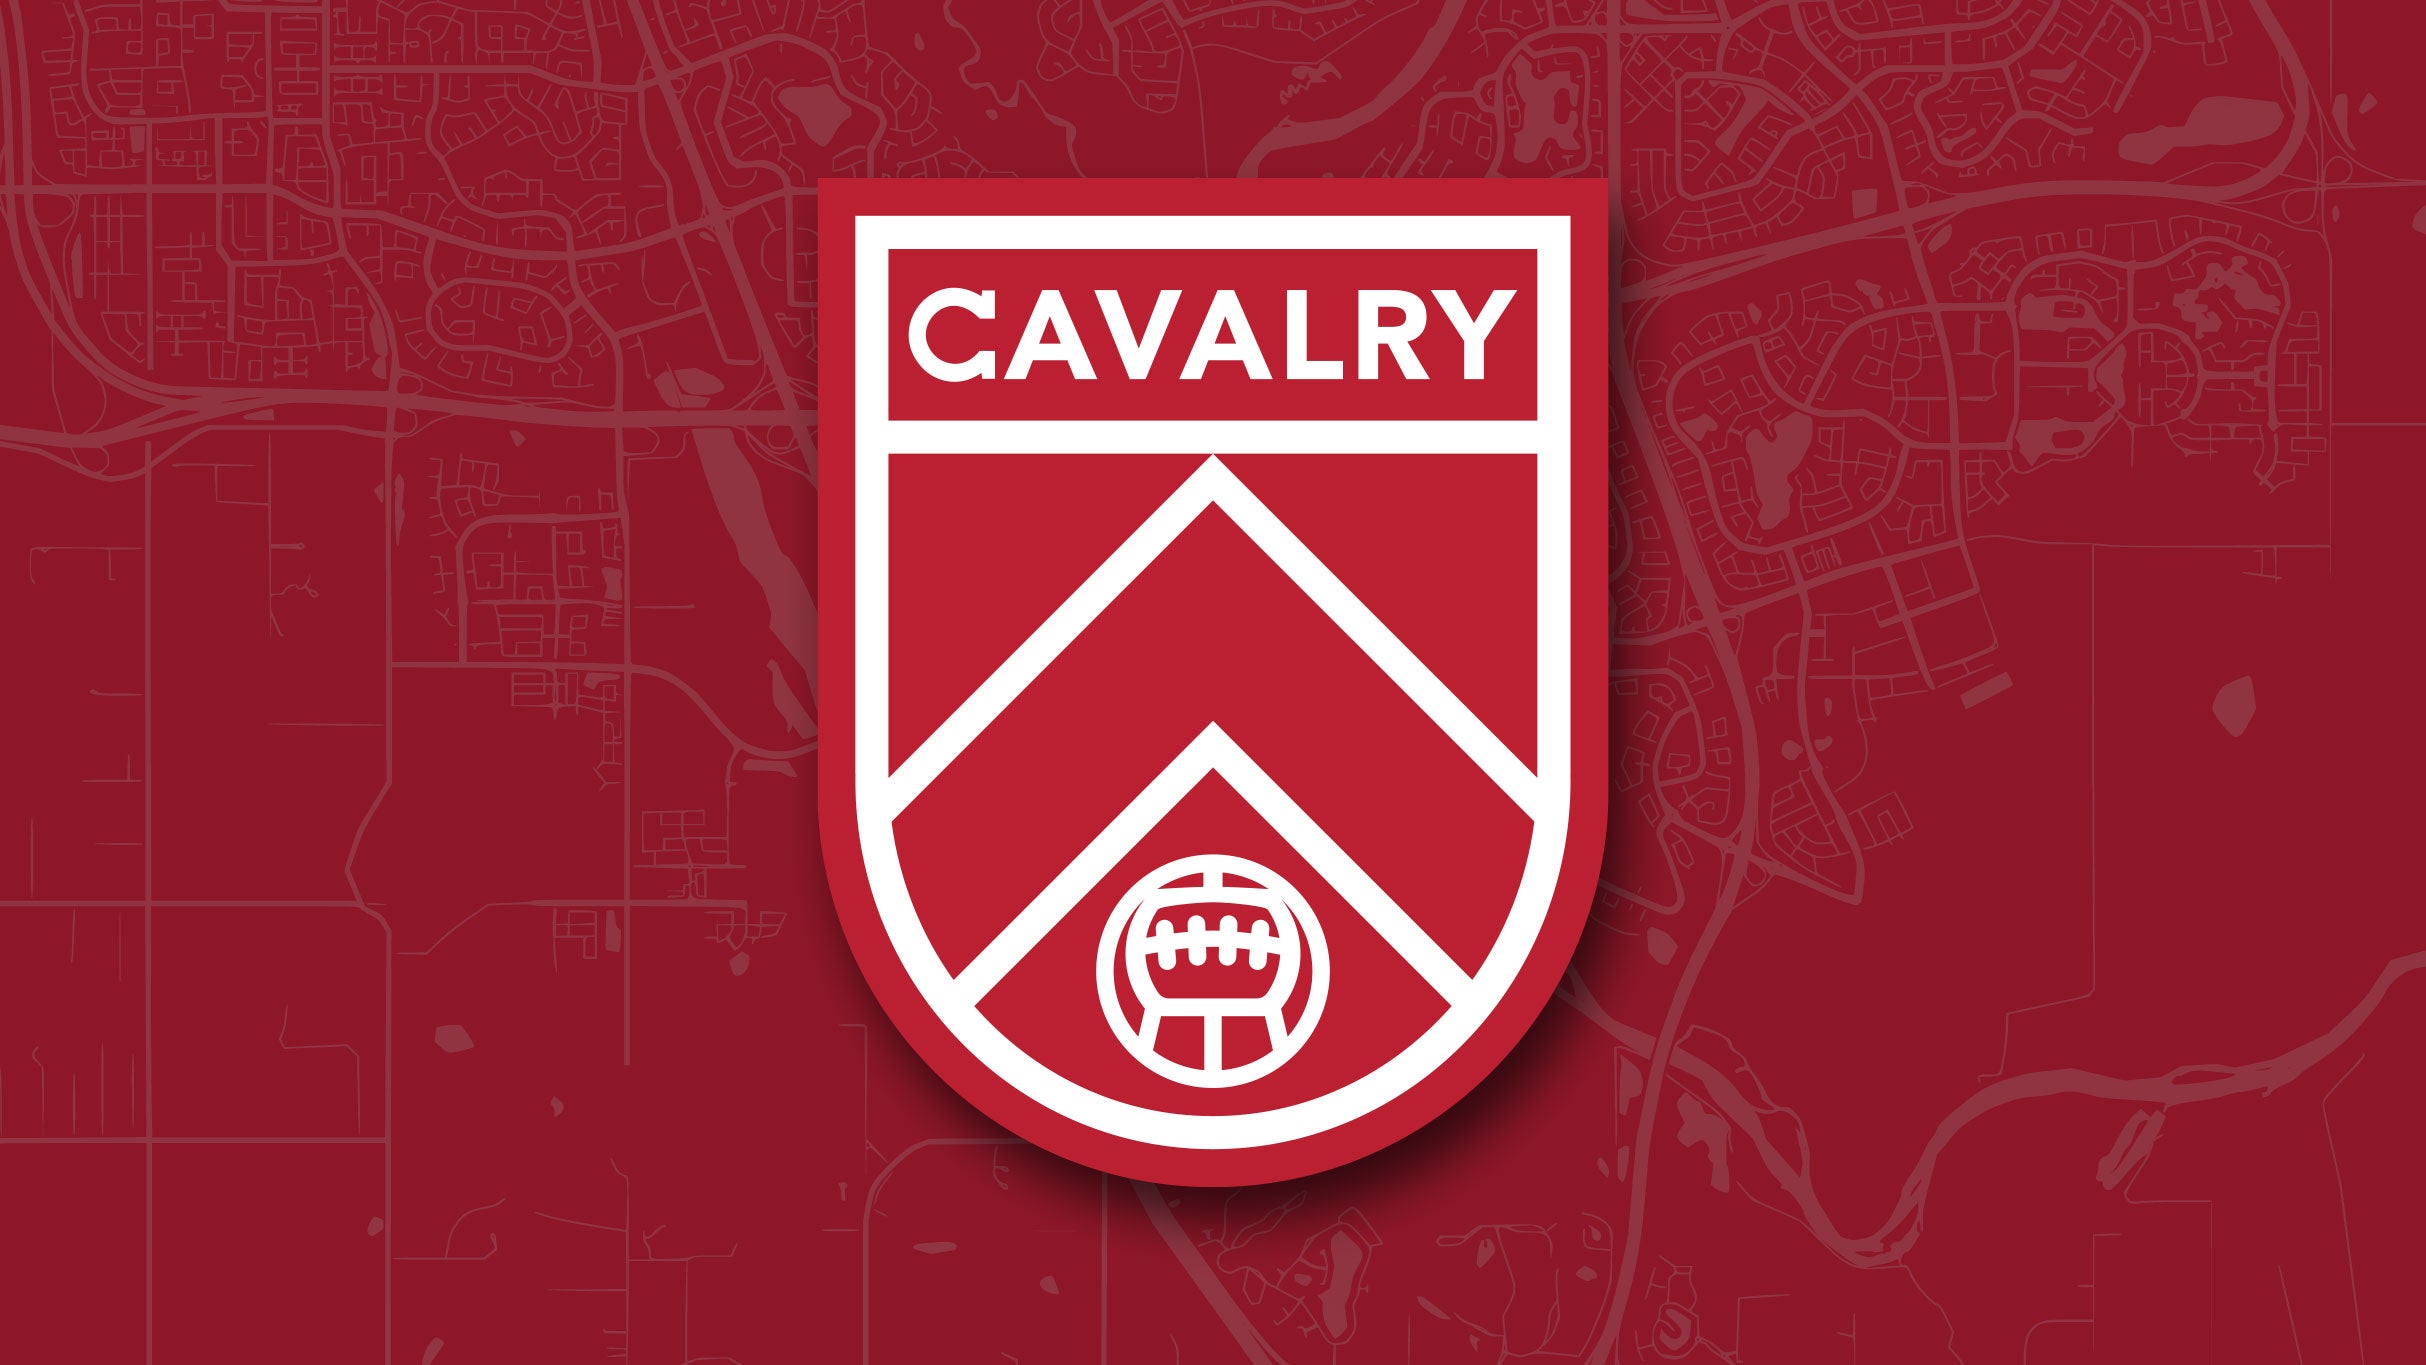 Cavalry FC vs Atletico Ottawa presale passwords